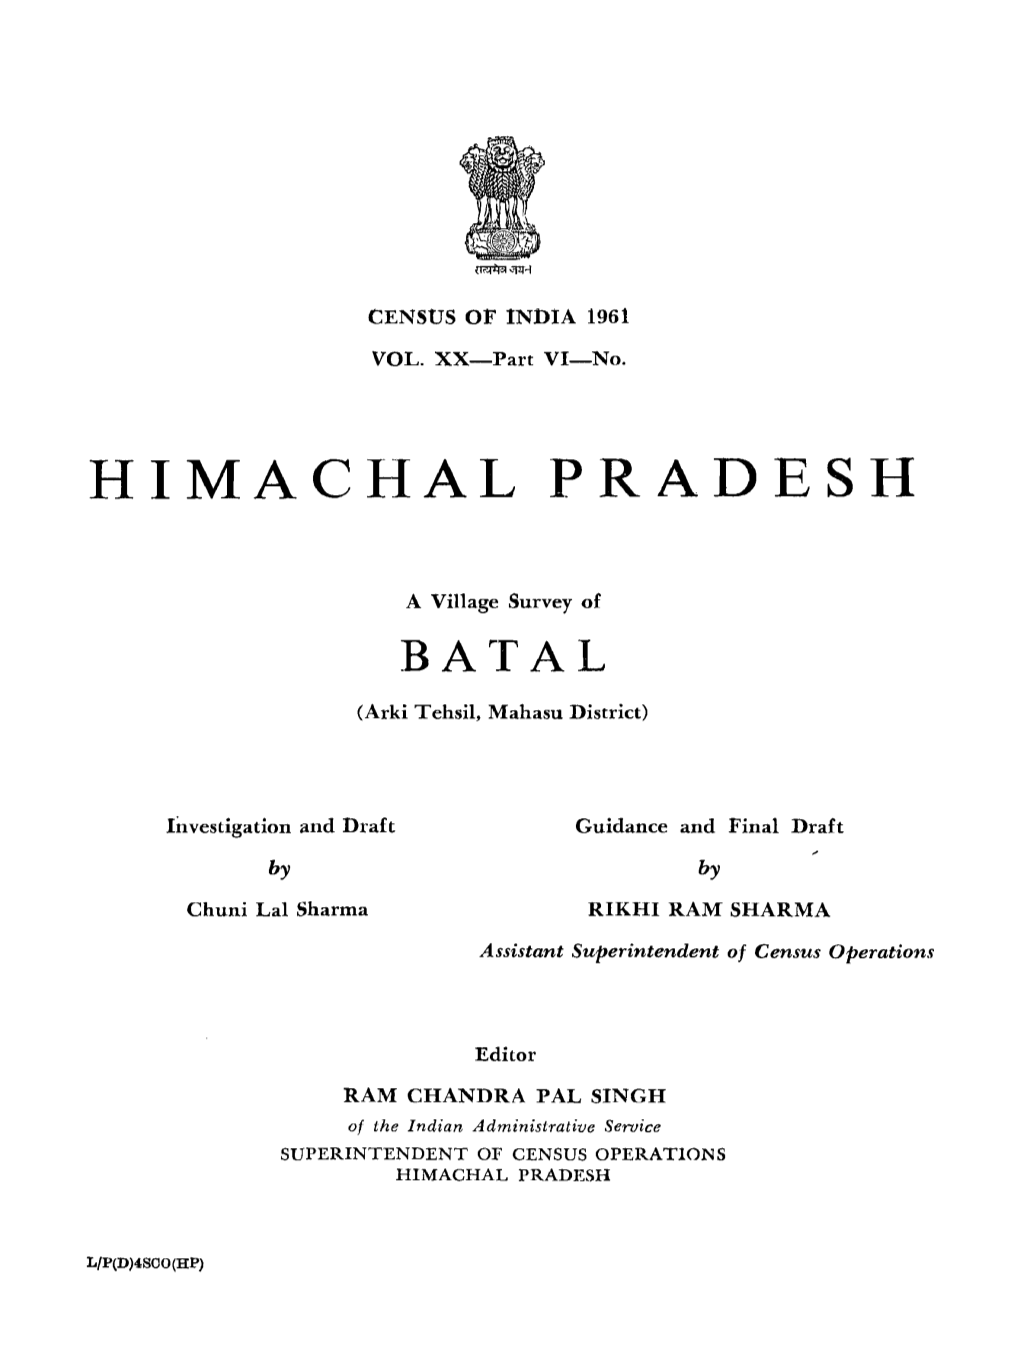 Village Survey of Batal, Part-VI-No-23, Vol-XX, Himachal